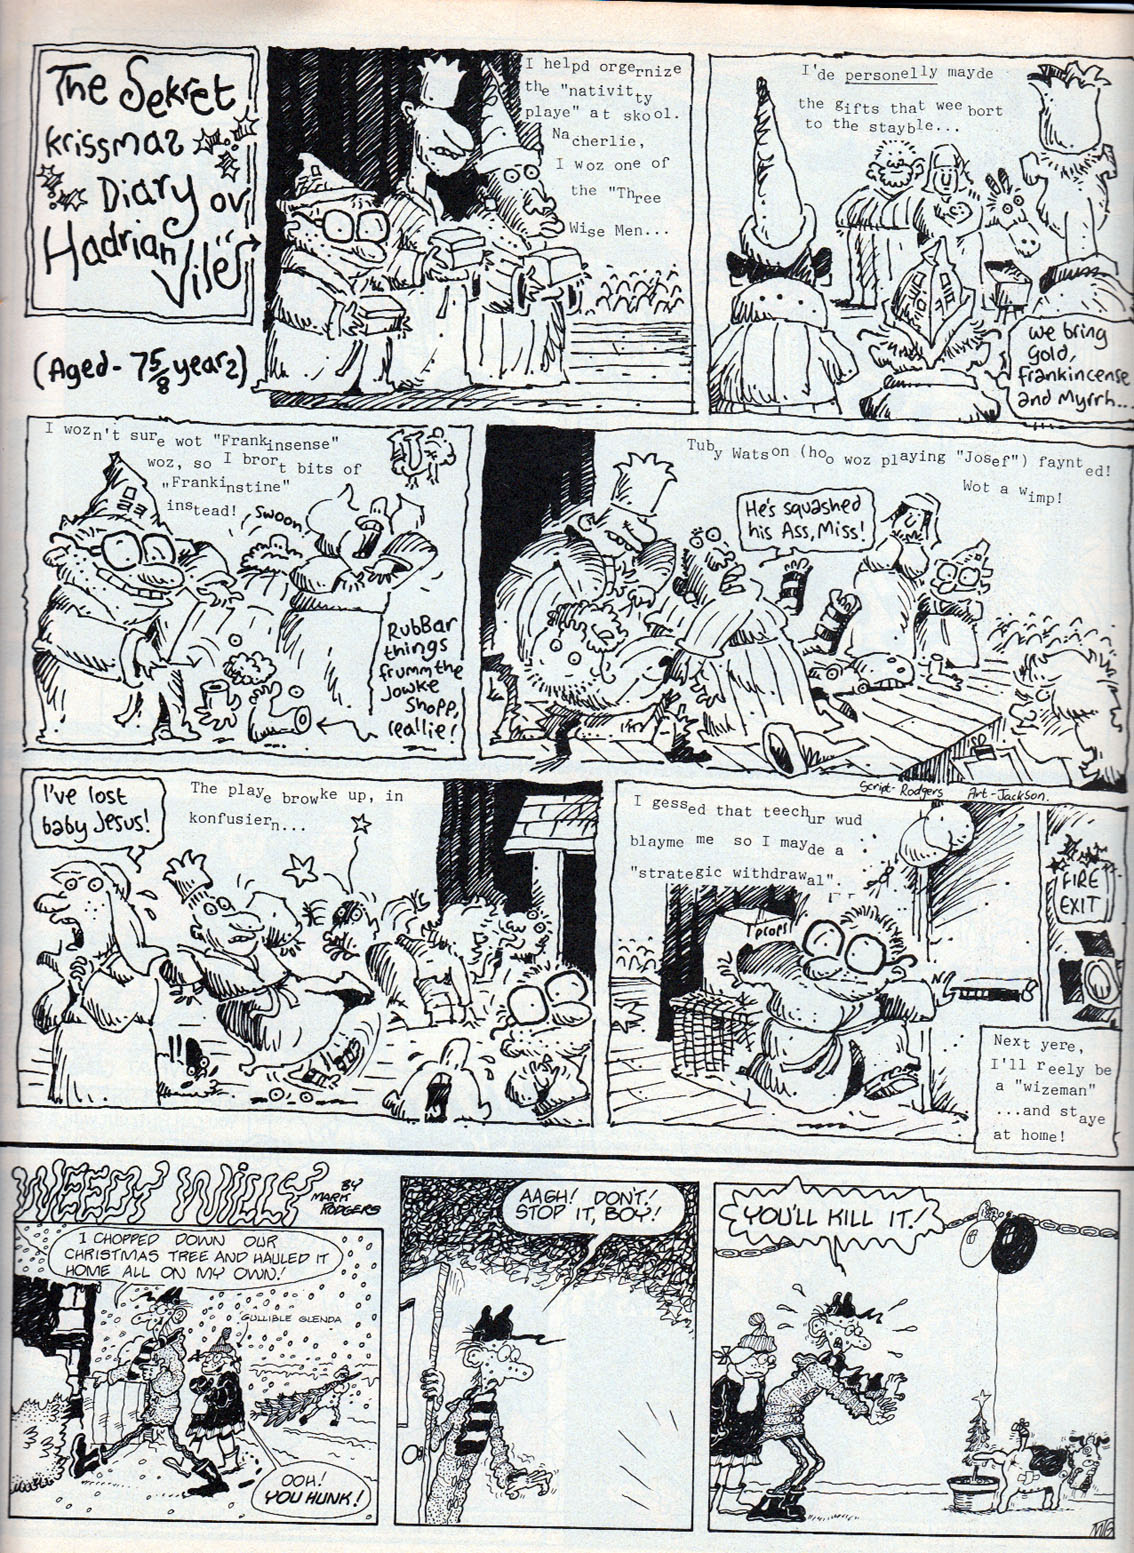 BLIMEY! The Blog of British Comics: Christmas Comics: OINK! (1986)